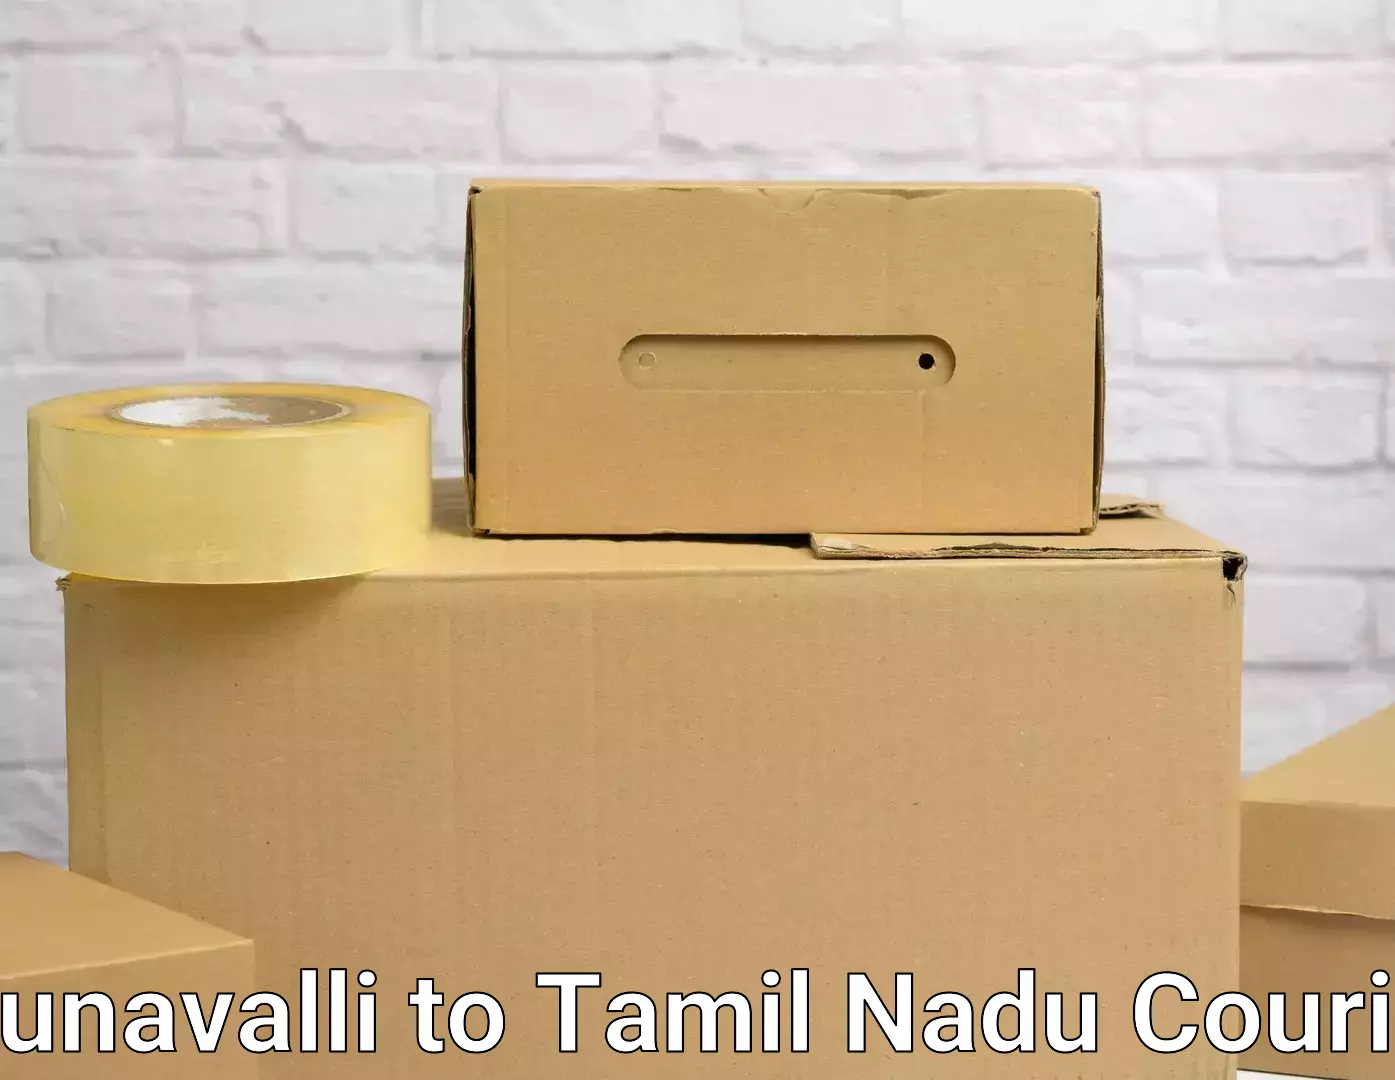 Nationwide moving services Munavalli to Tiruvarur